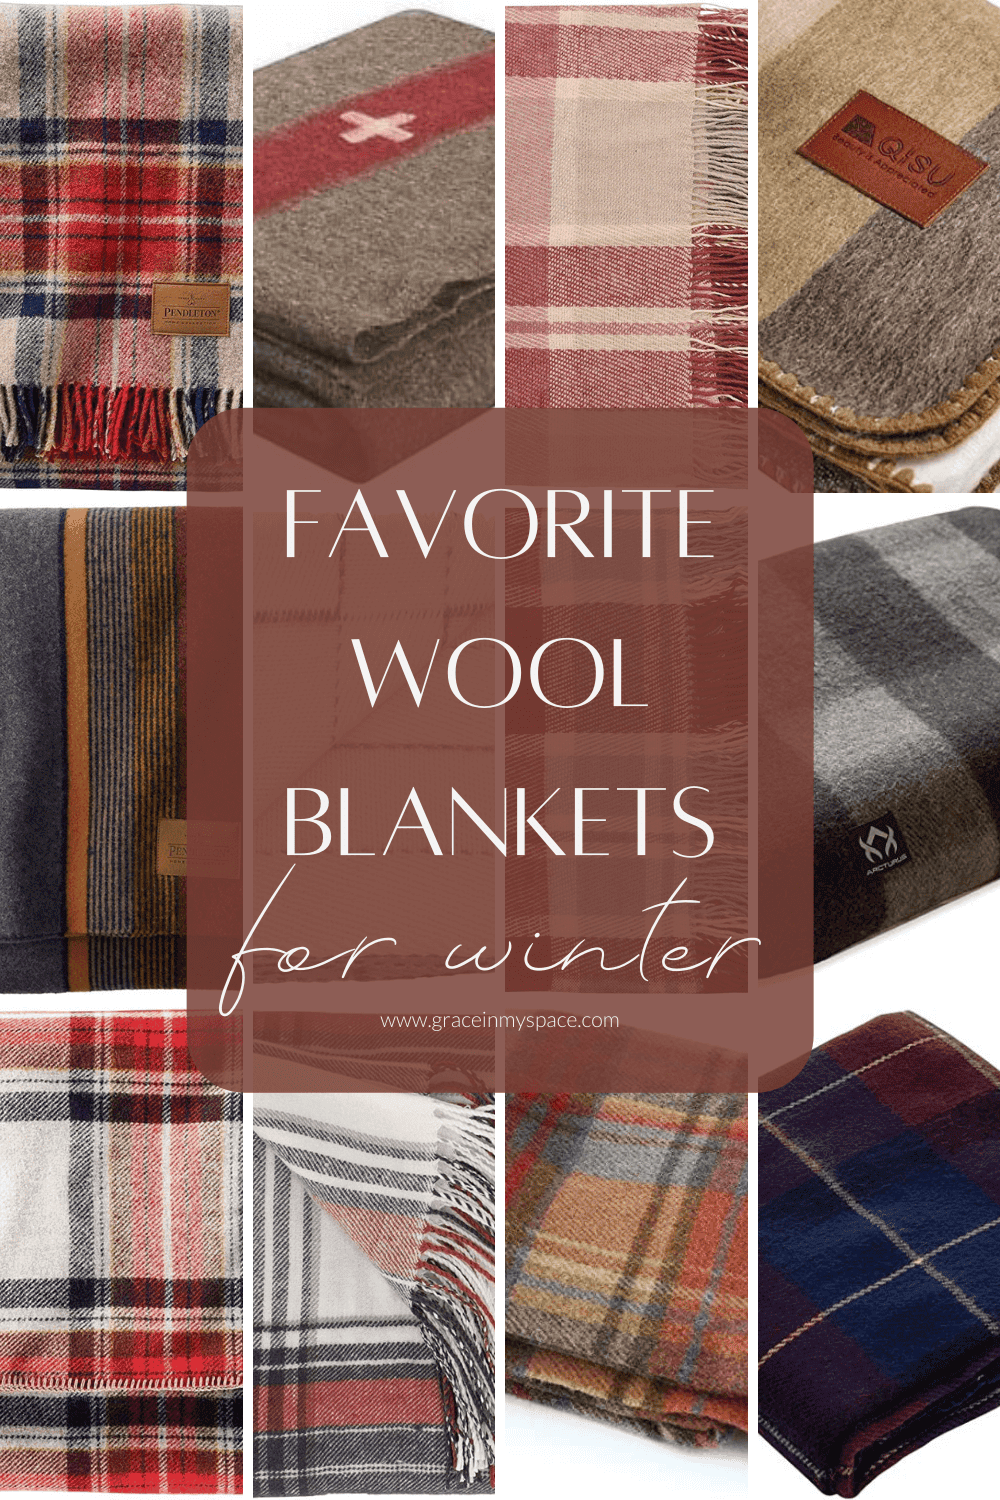 Favorite wool blankets.